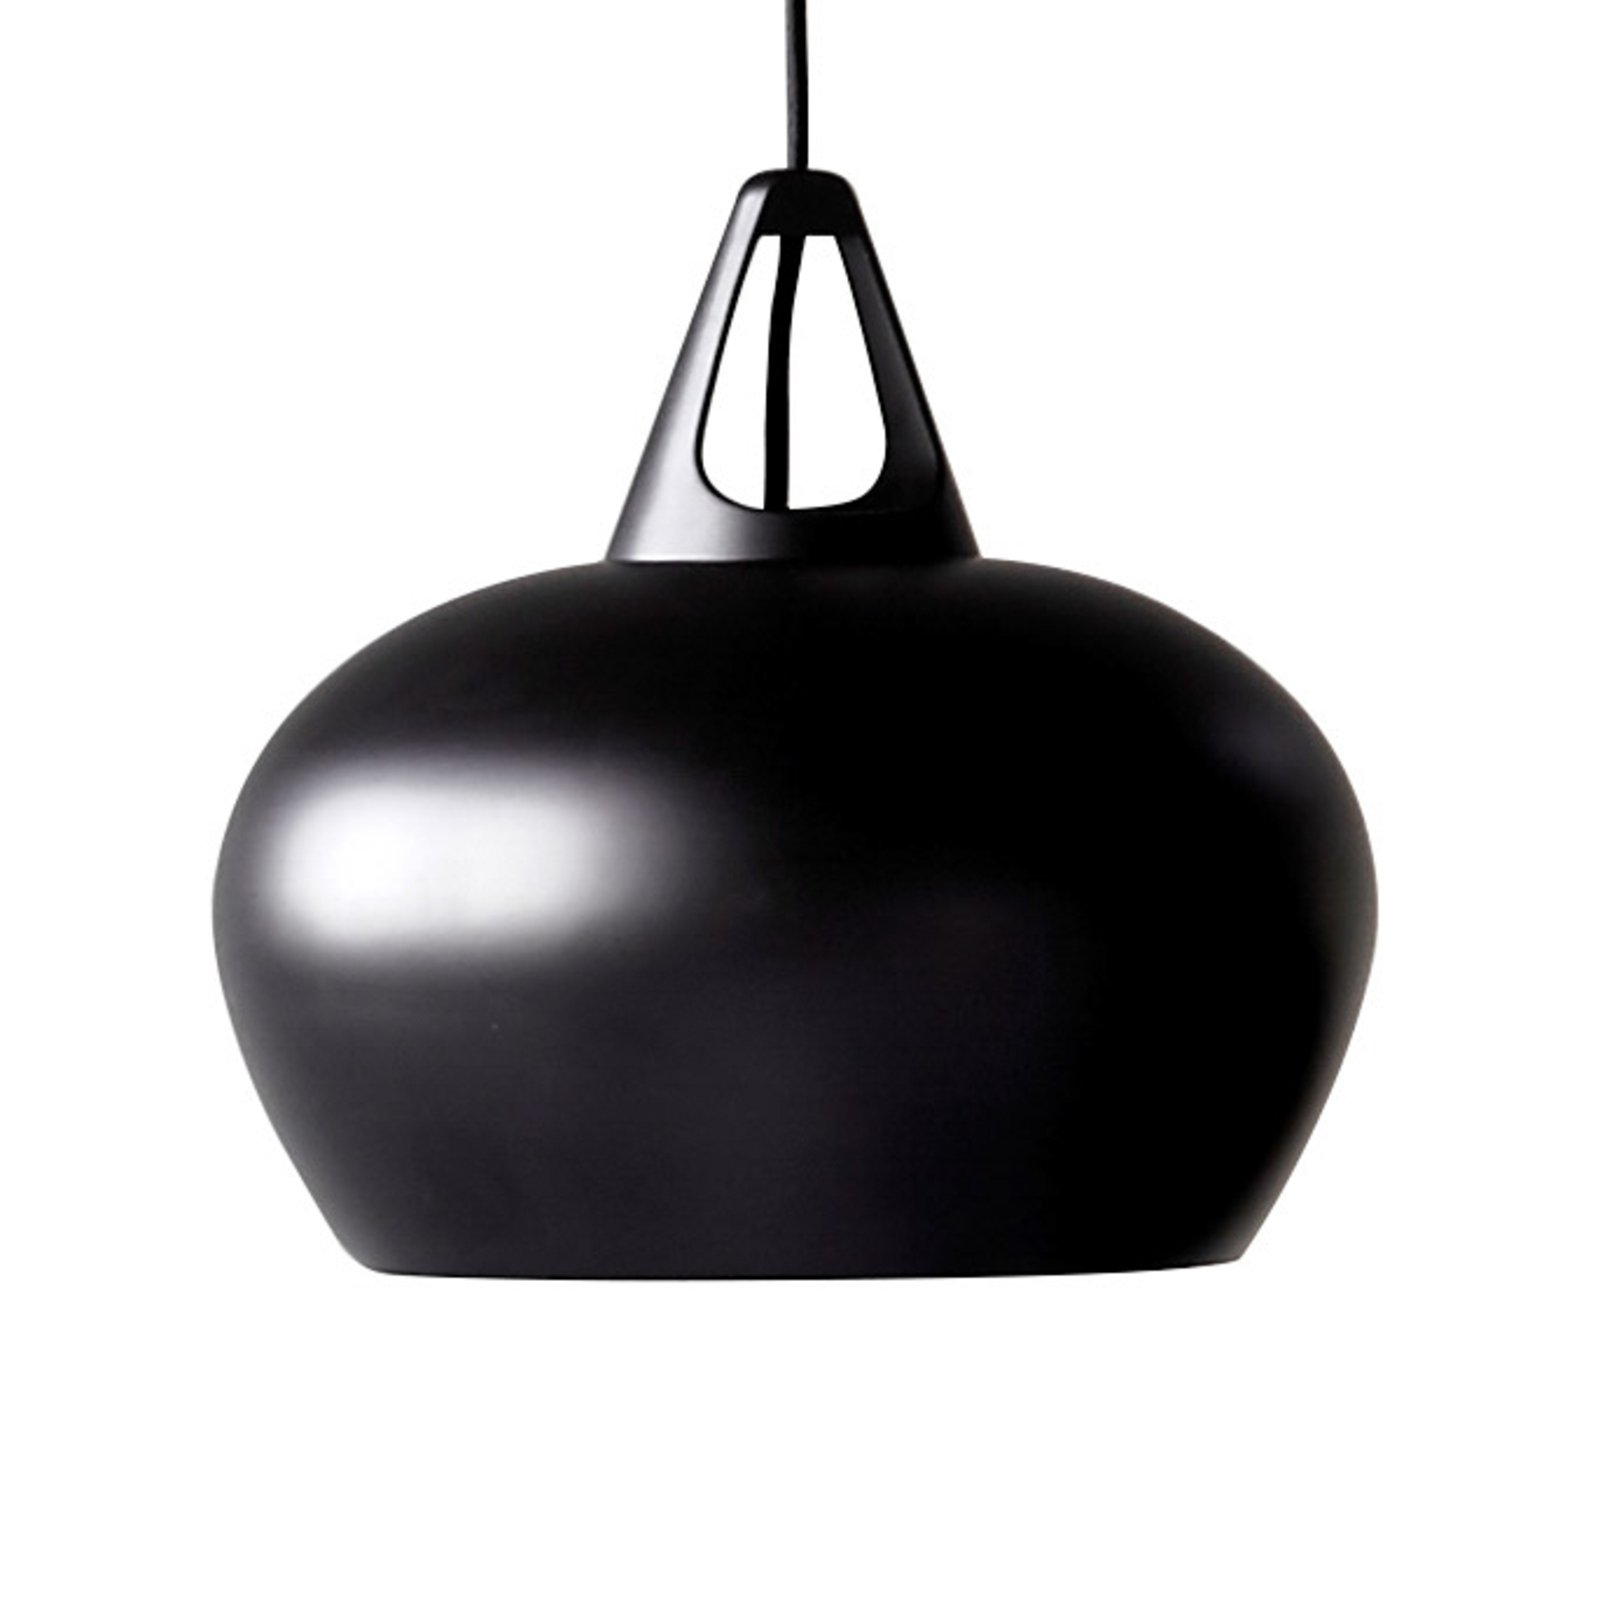 Effectrijke hanglamp Belly, Ø 29 cm